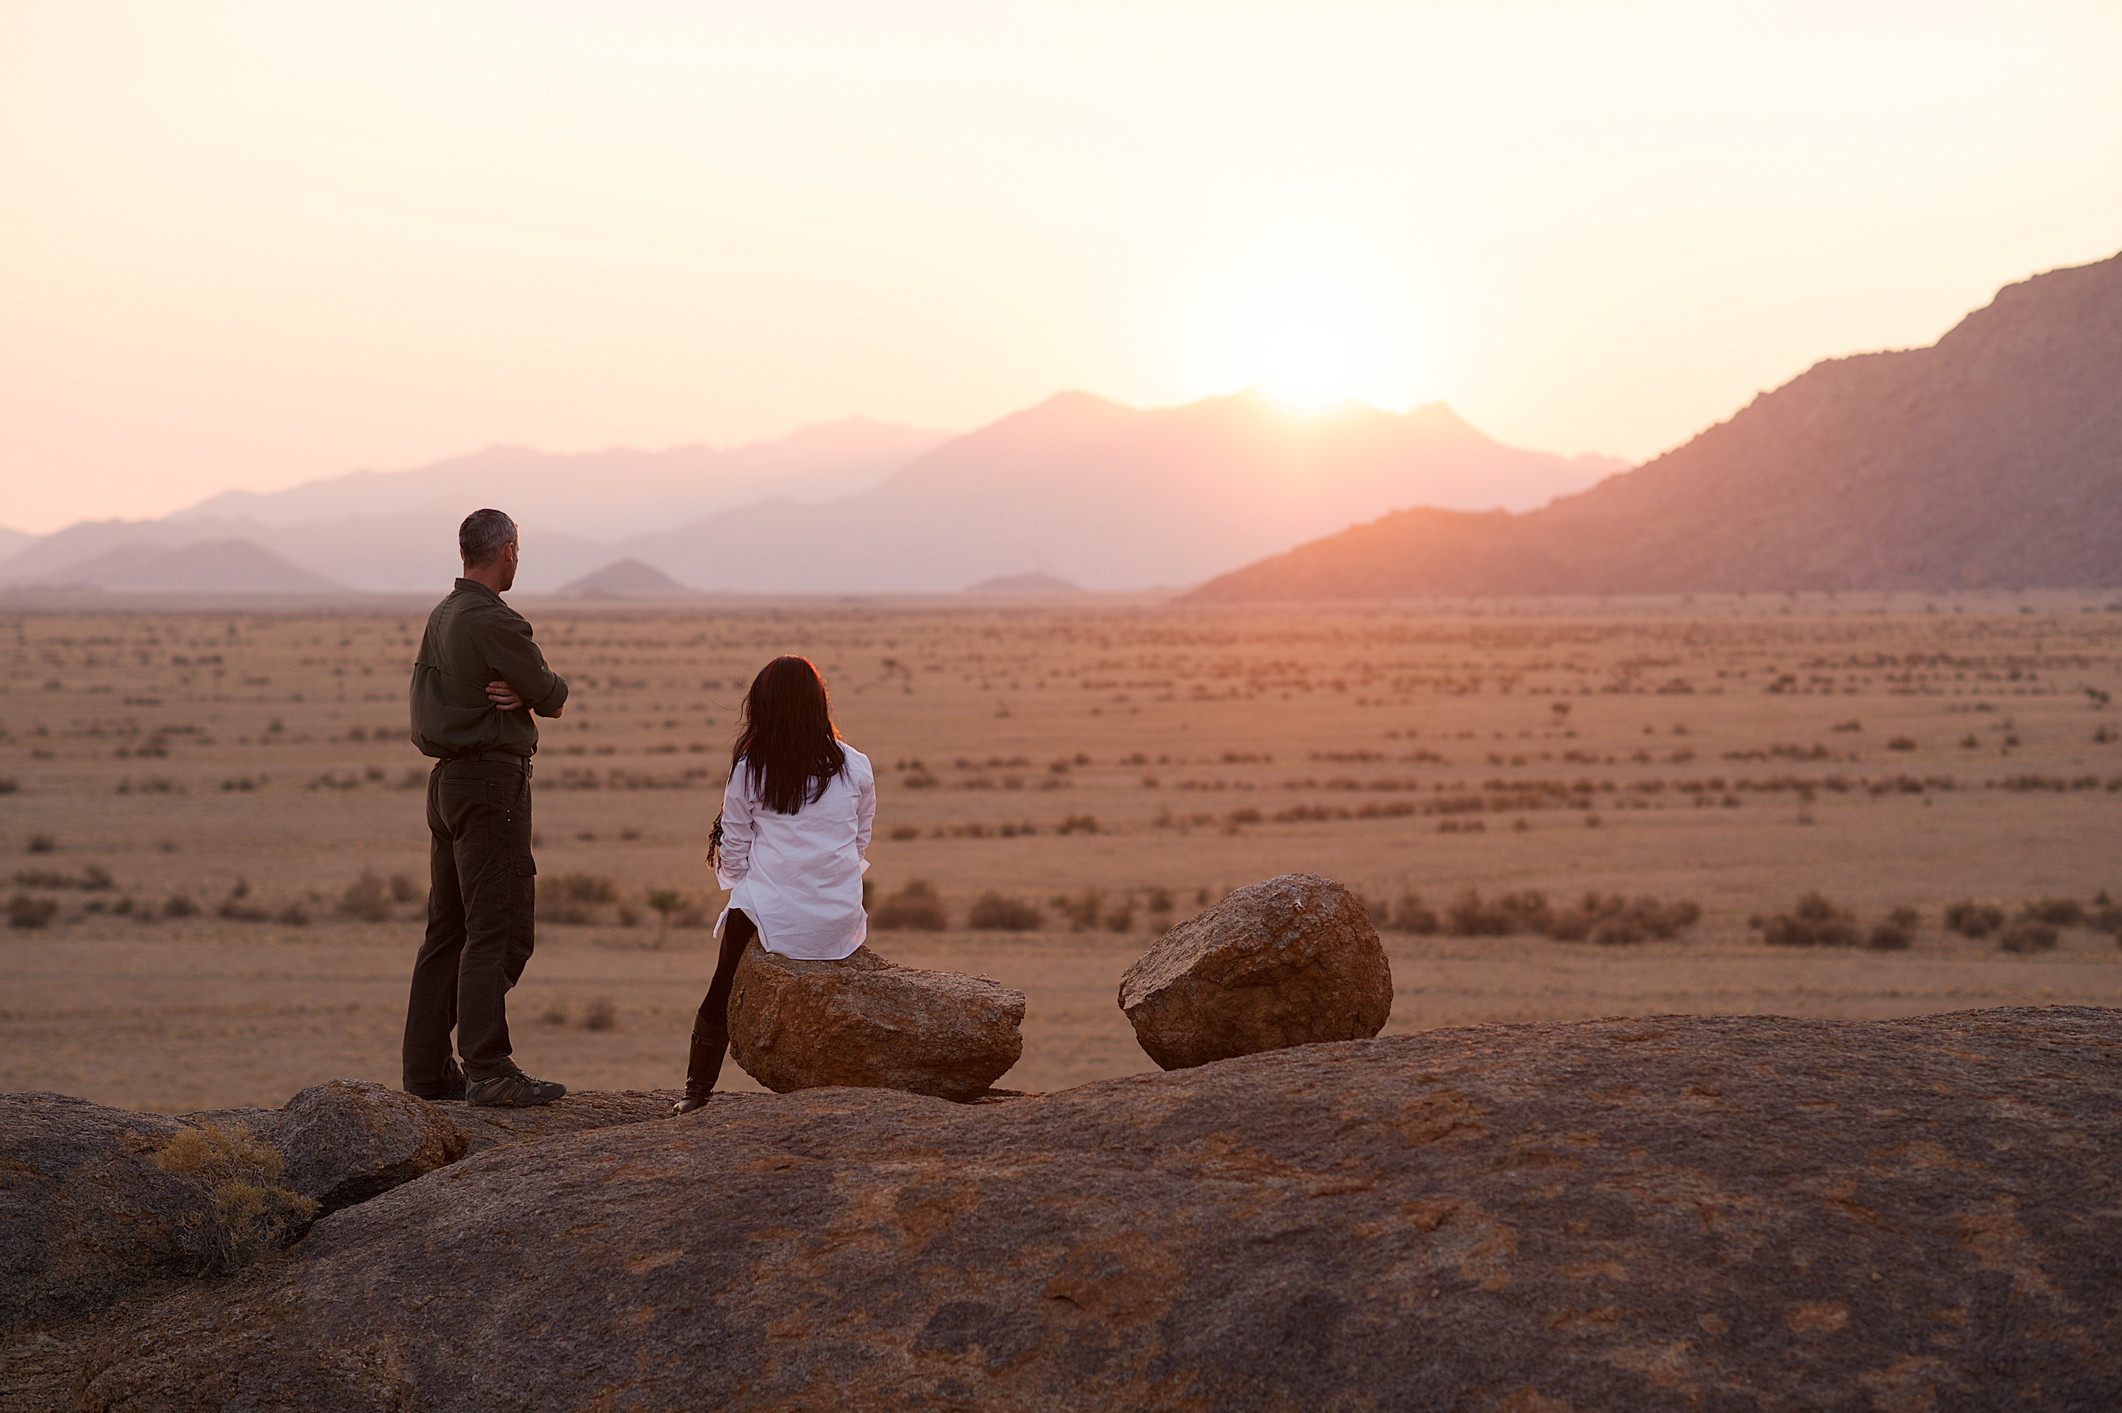 namibia coppia nel deserto